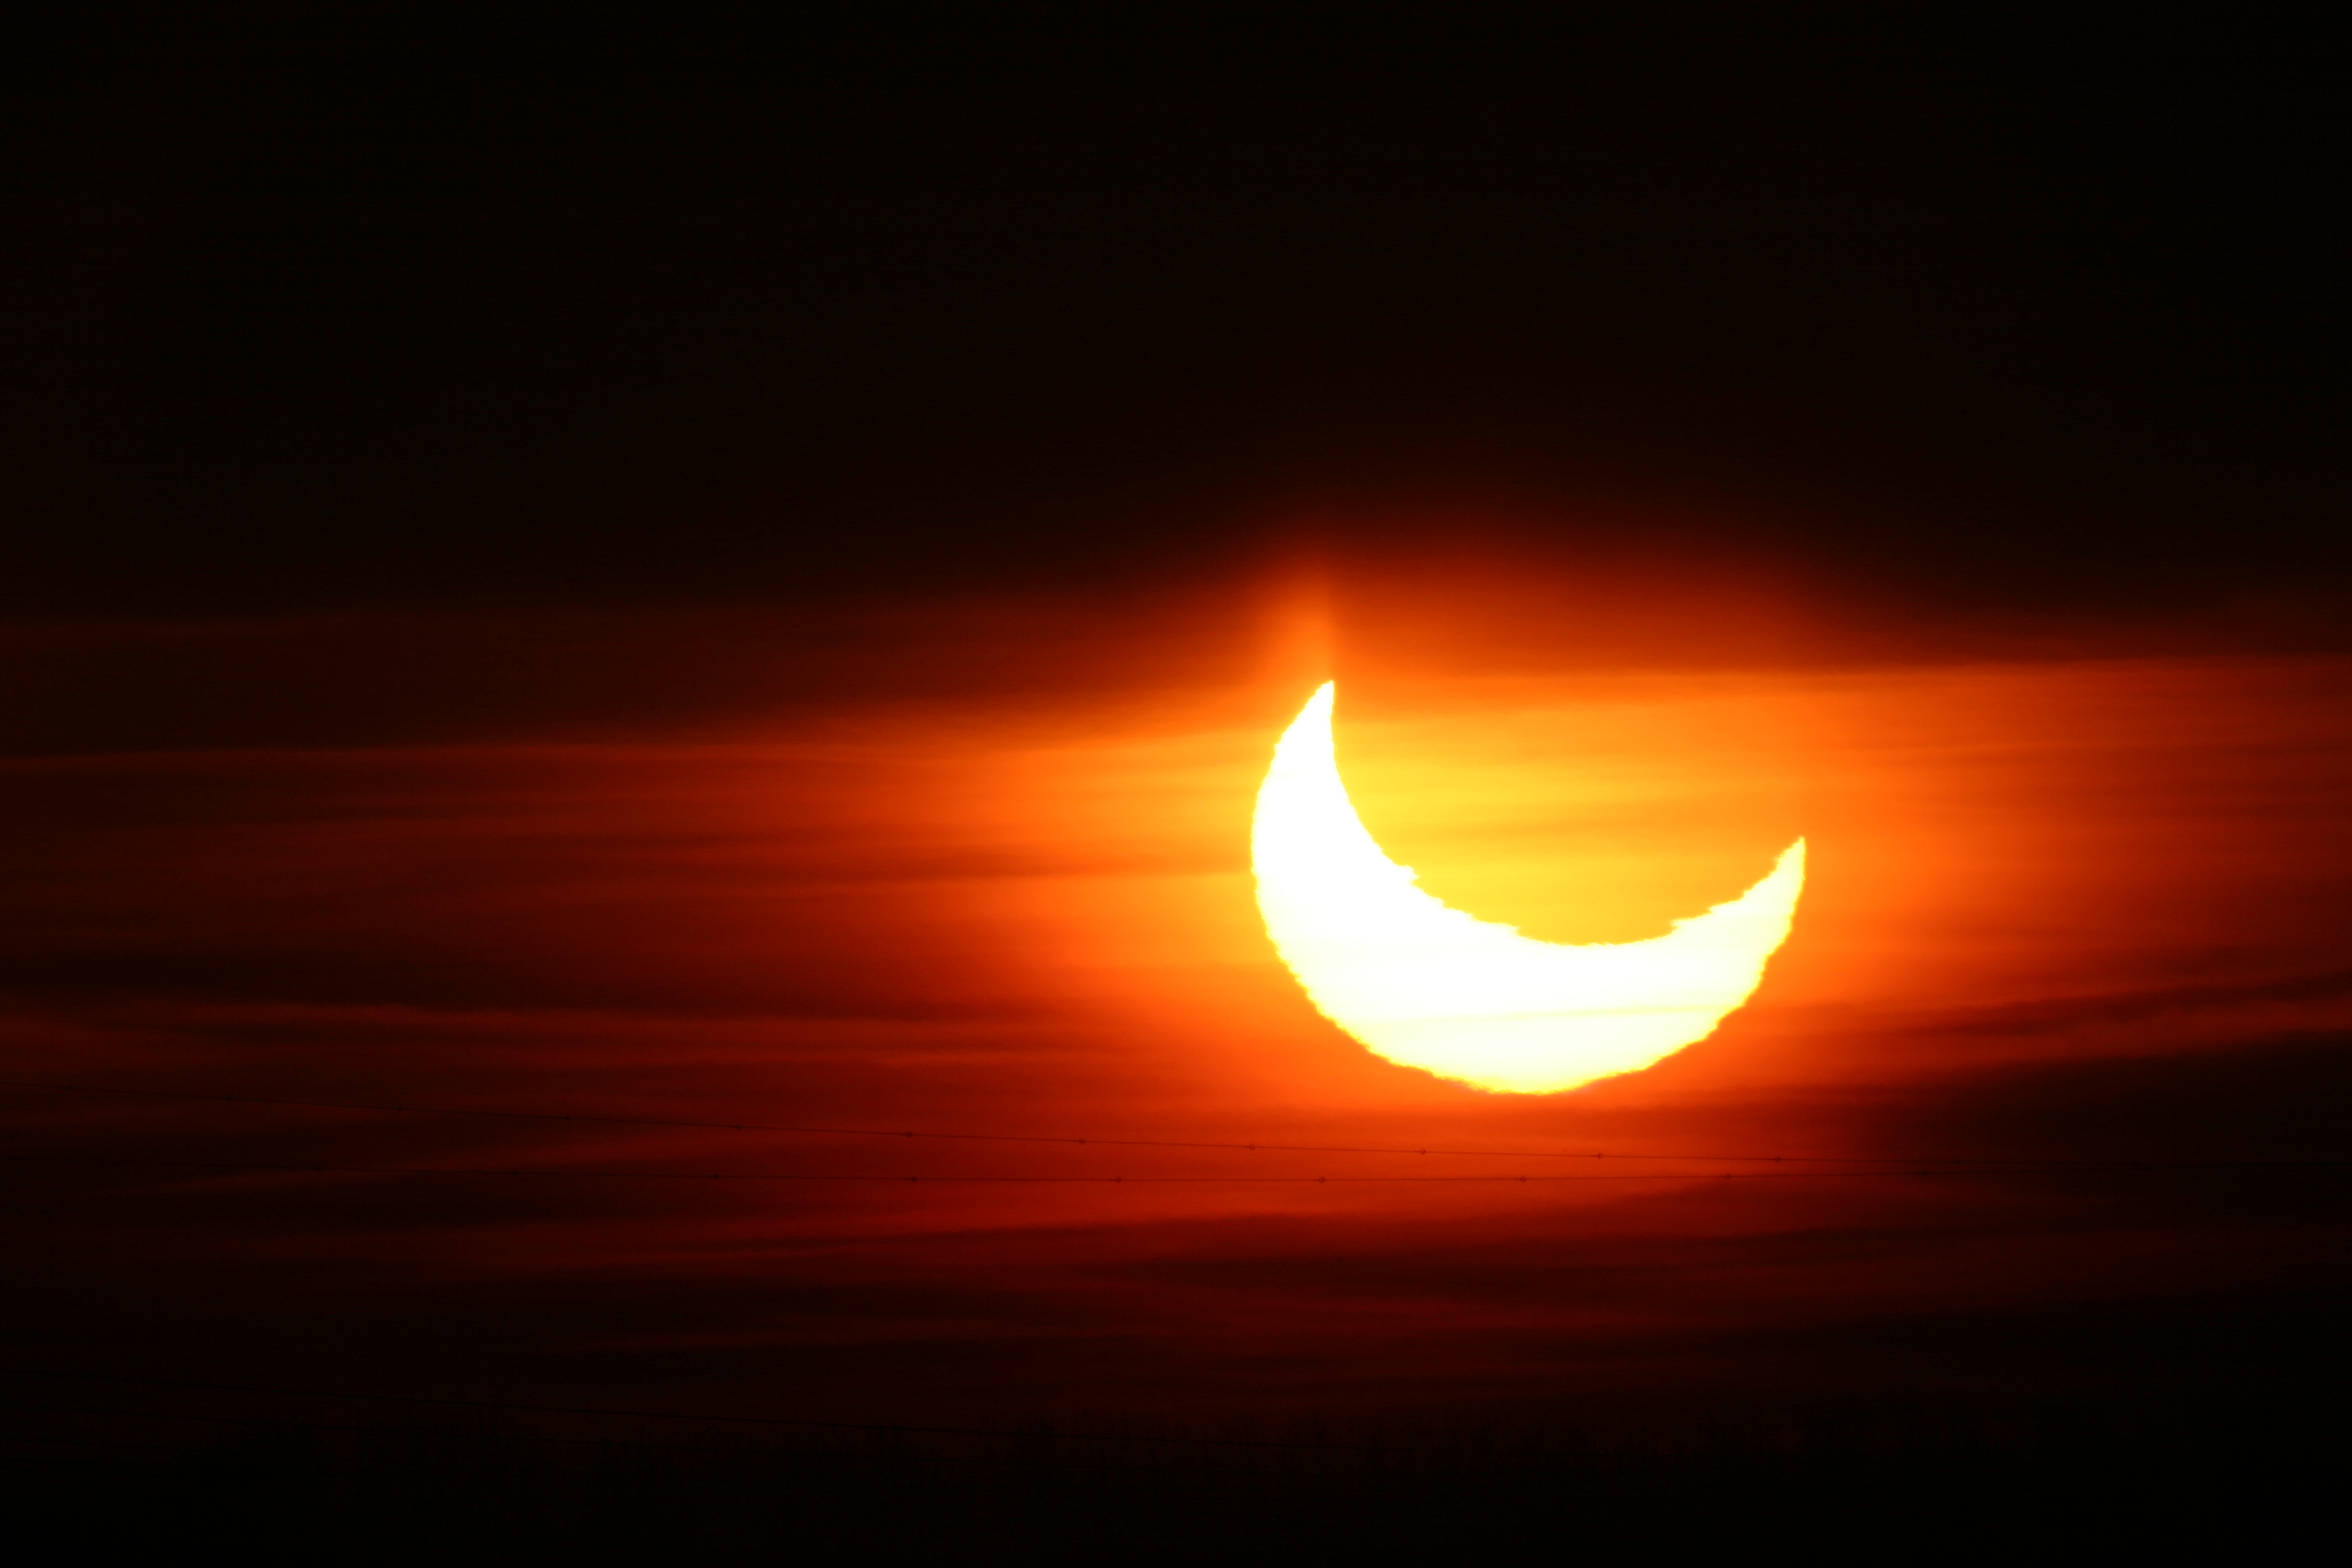 De gedeeltelijke zonsverduistering van 4 januari 2011. Copyright: Jaap Vreeling, NOVA